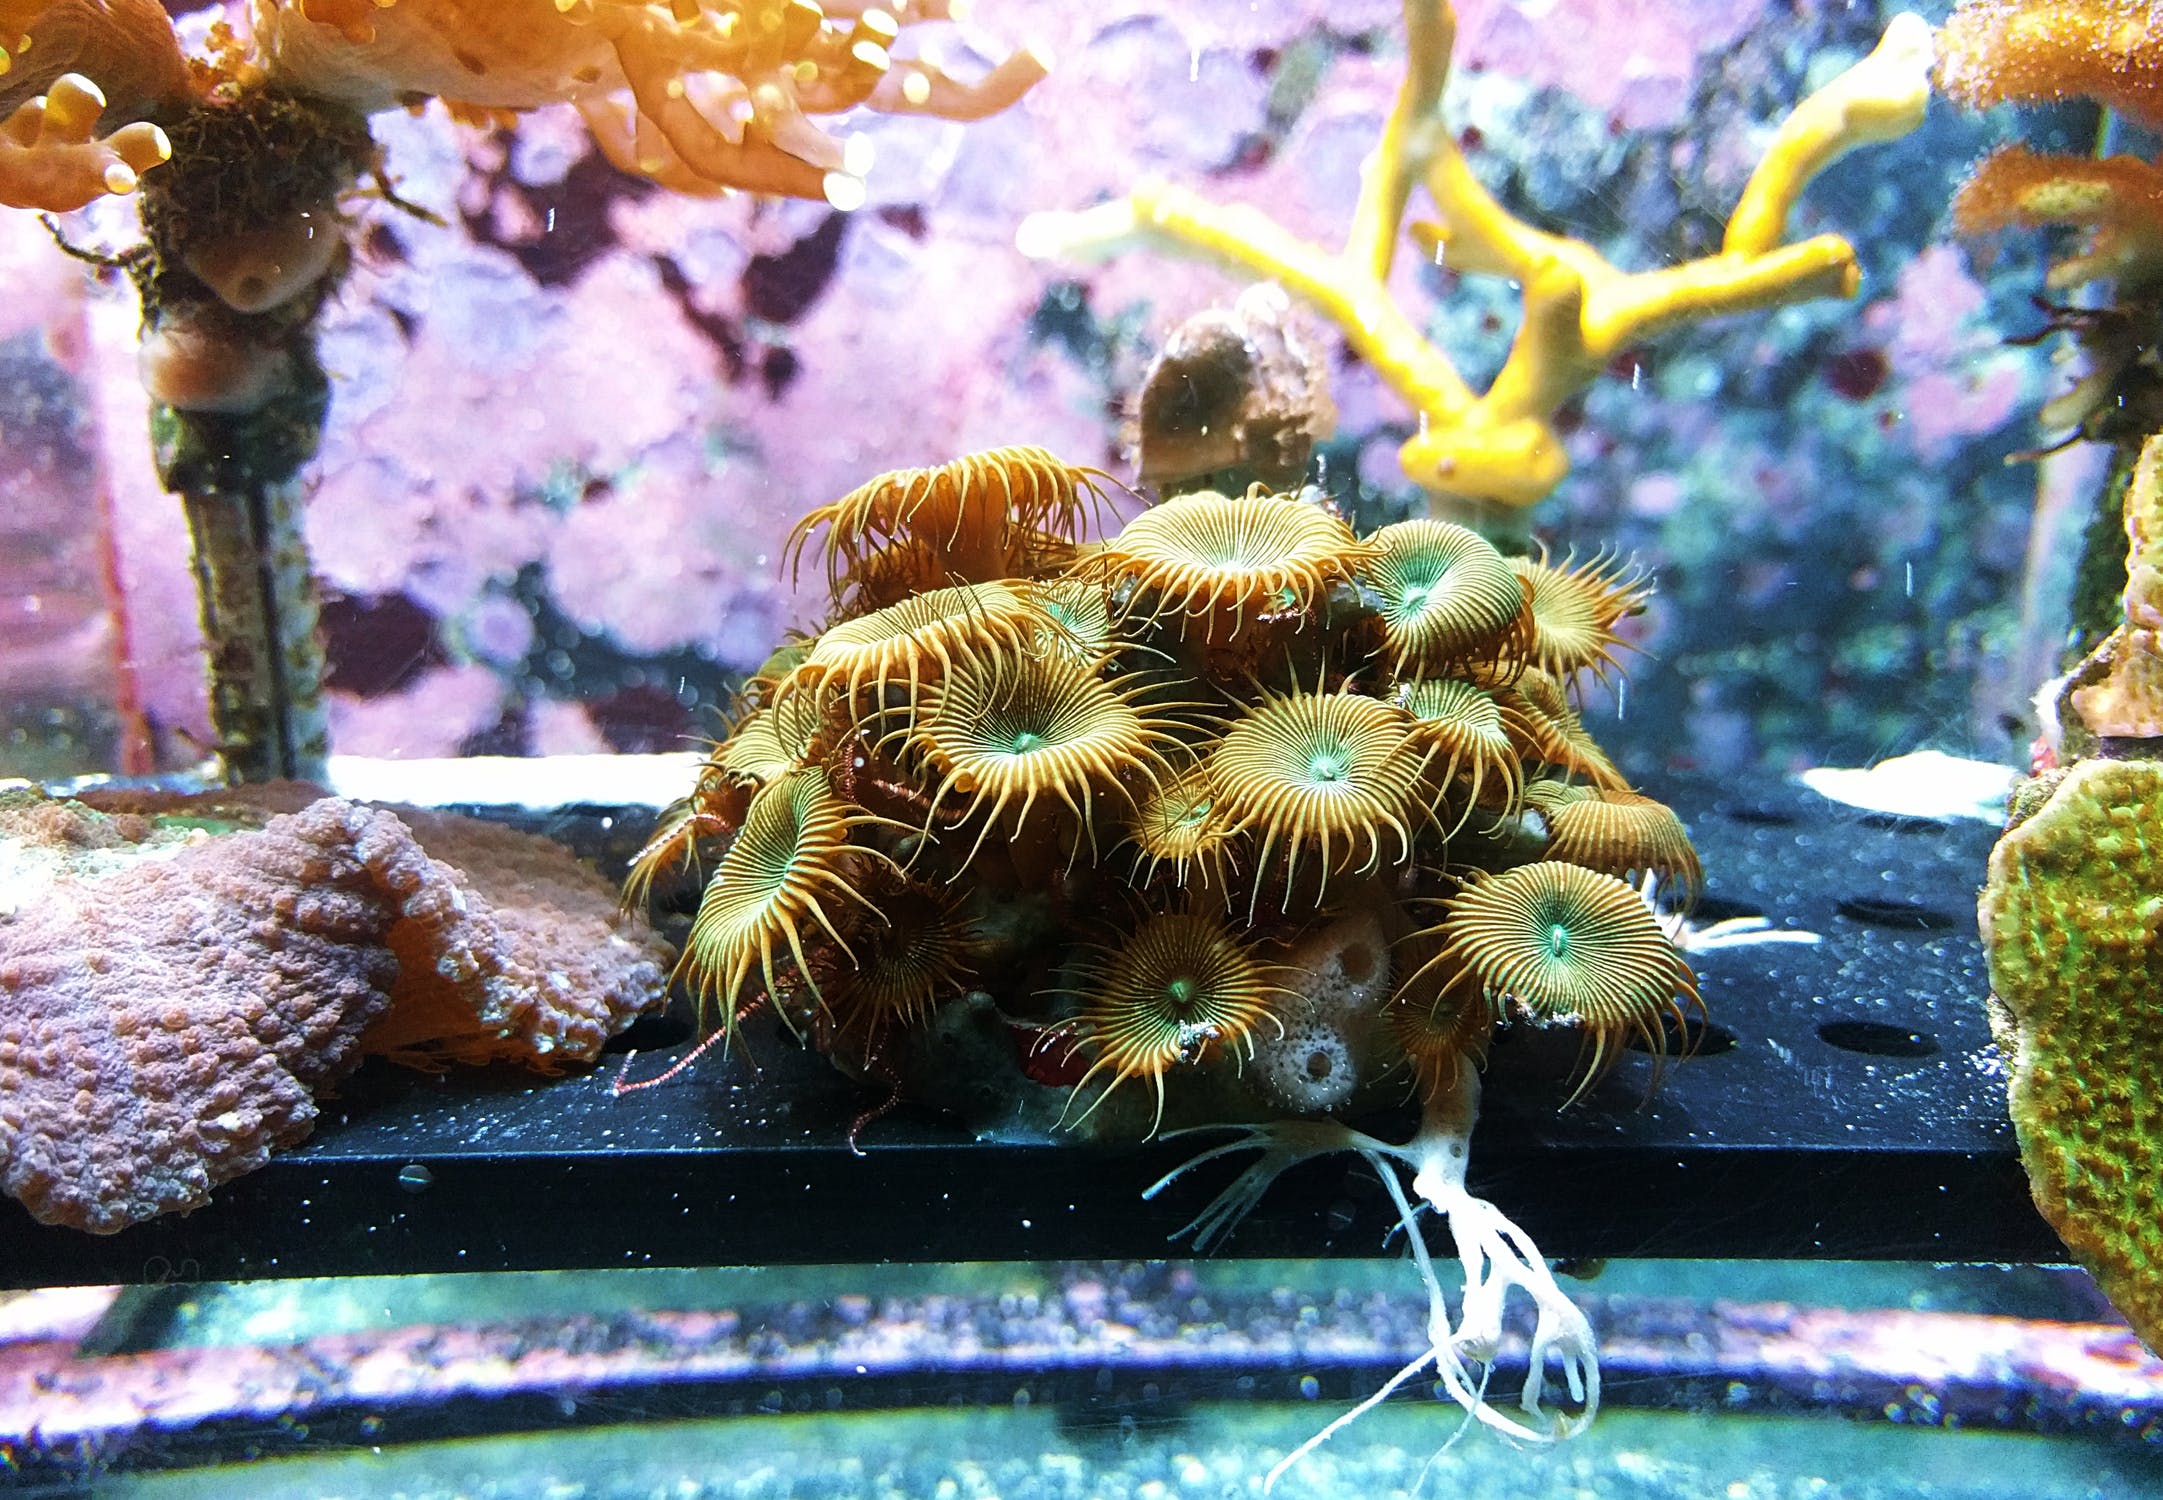 Corales coloridos dentro de una pecera. | Imagen: Pexels